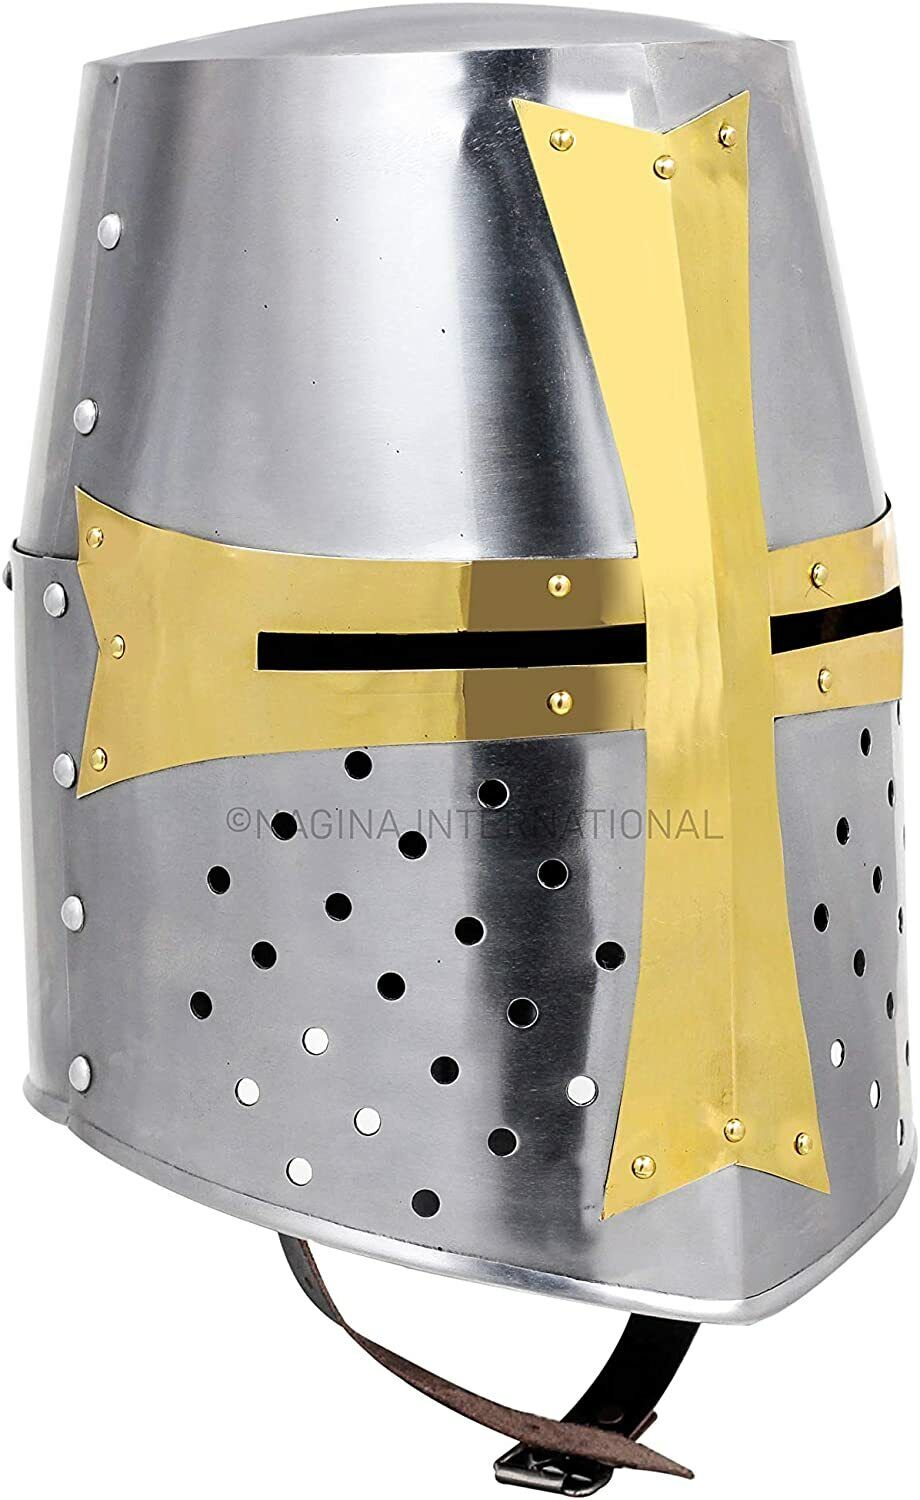 Medieval Knight Armor Crusader New Templar Helmet Helm Mason's Cross Wearable 18